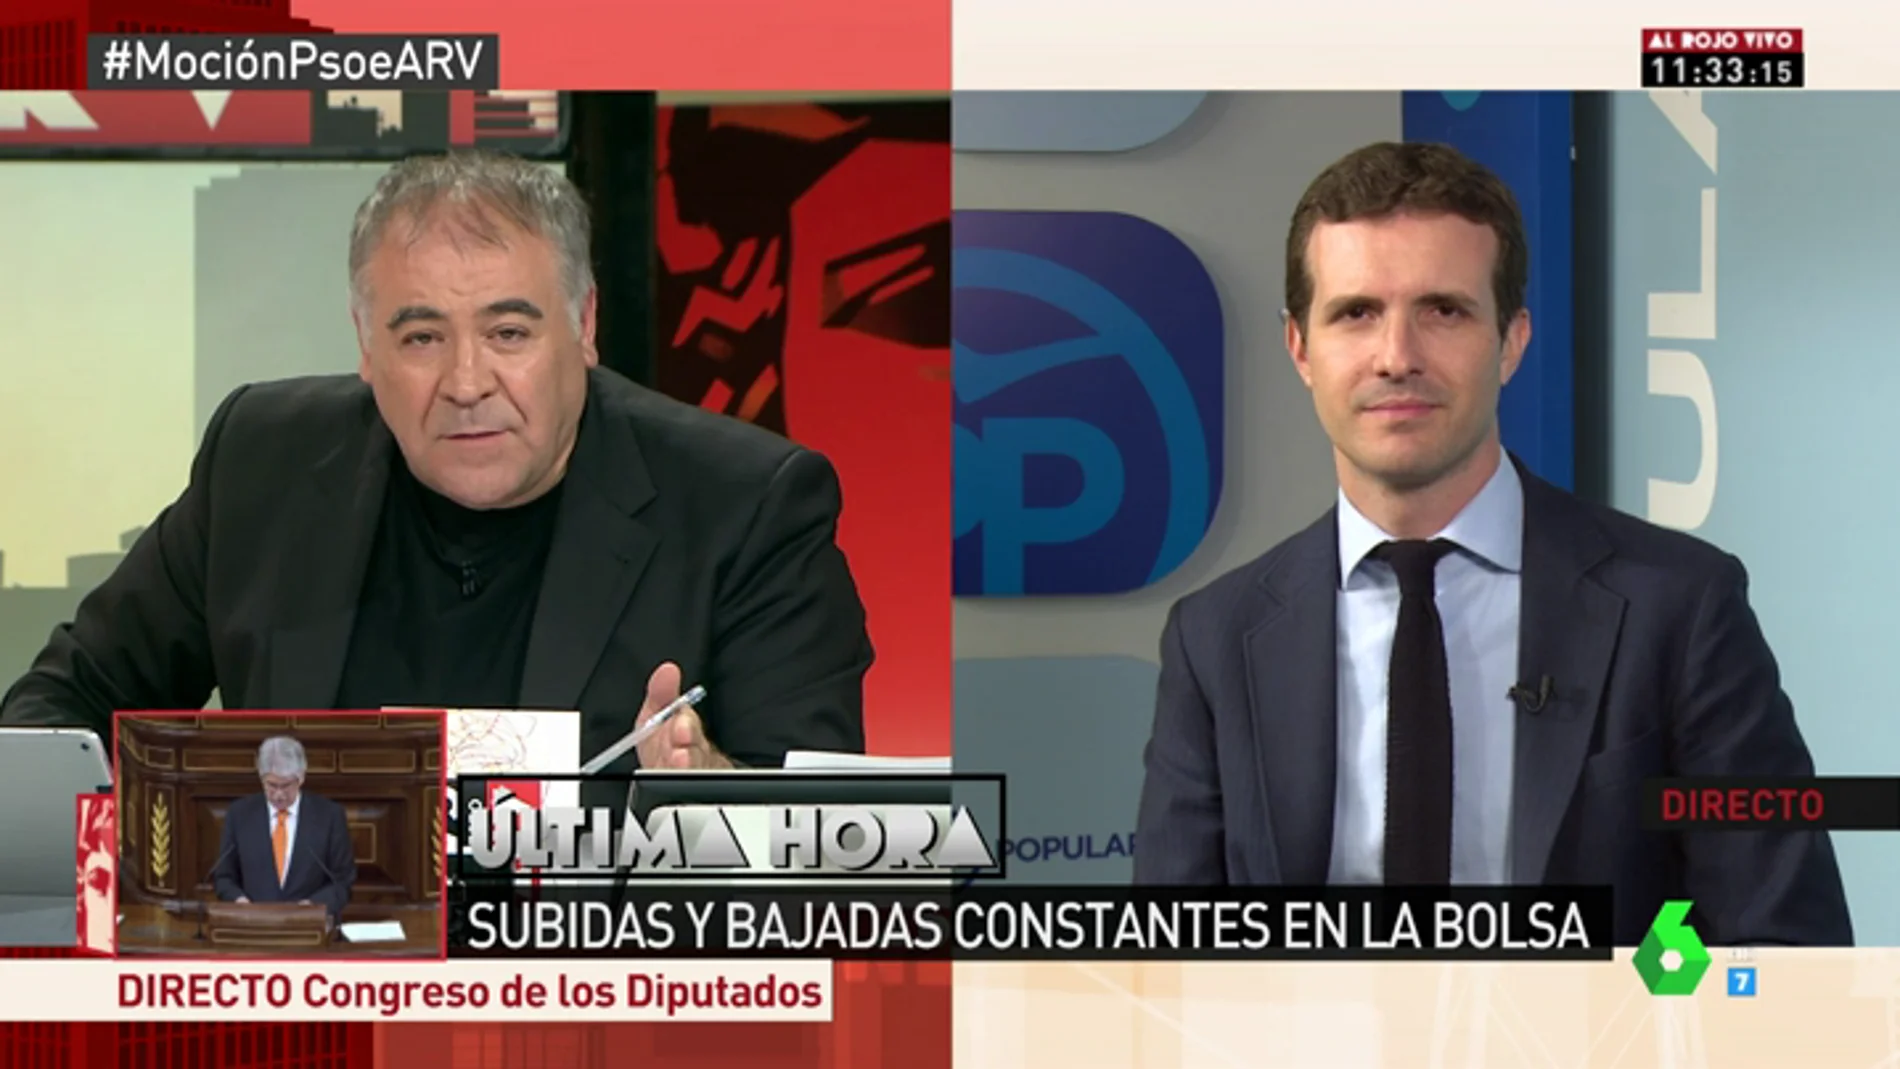 Pablo Casado: "Unas terceras elecciones en dos años y la inestabilidad en plena aplicación del 155 no le van bien a España"